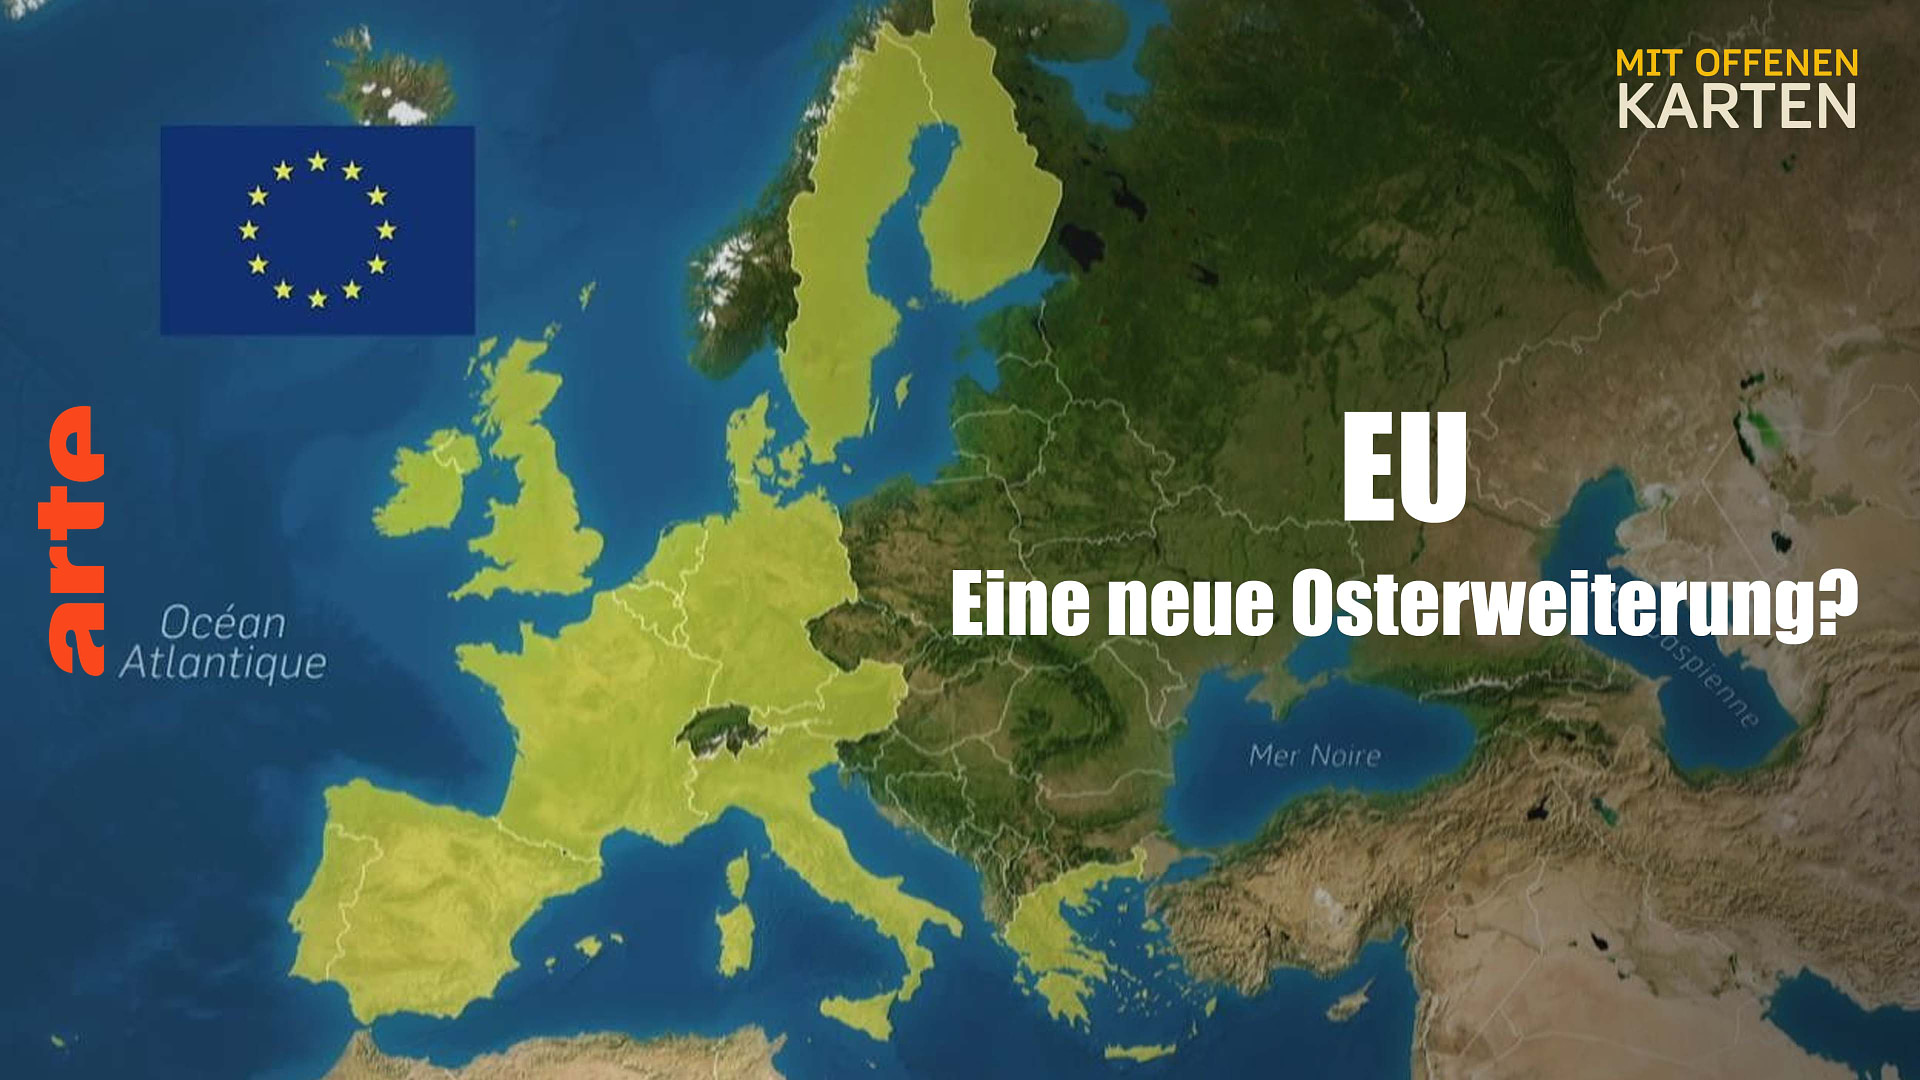 Europäische Union: eine neue Osterweiterung?